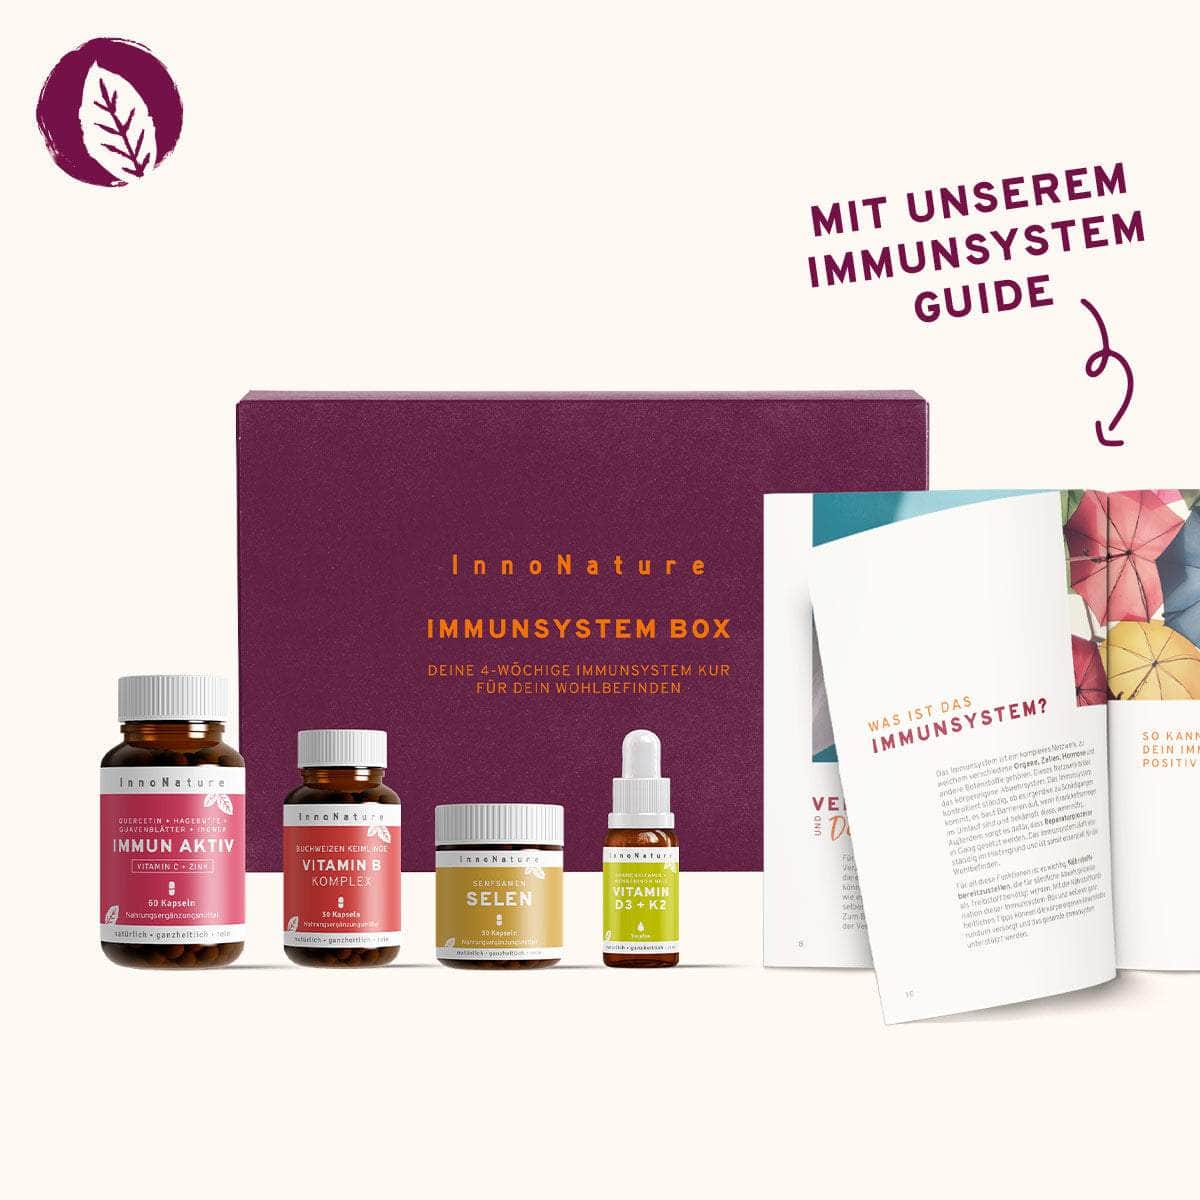 InnoNature Pakete Immunsystem Box: Die Immunkur für Dein Wohlbefinden